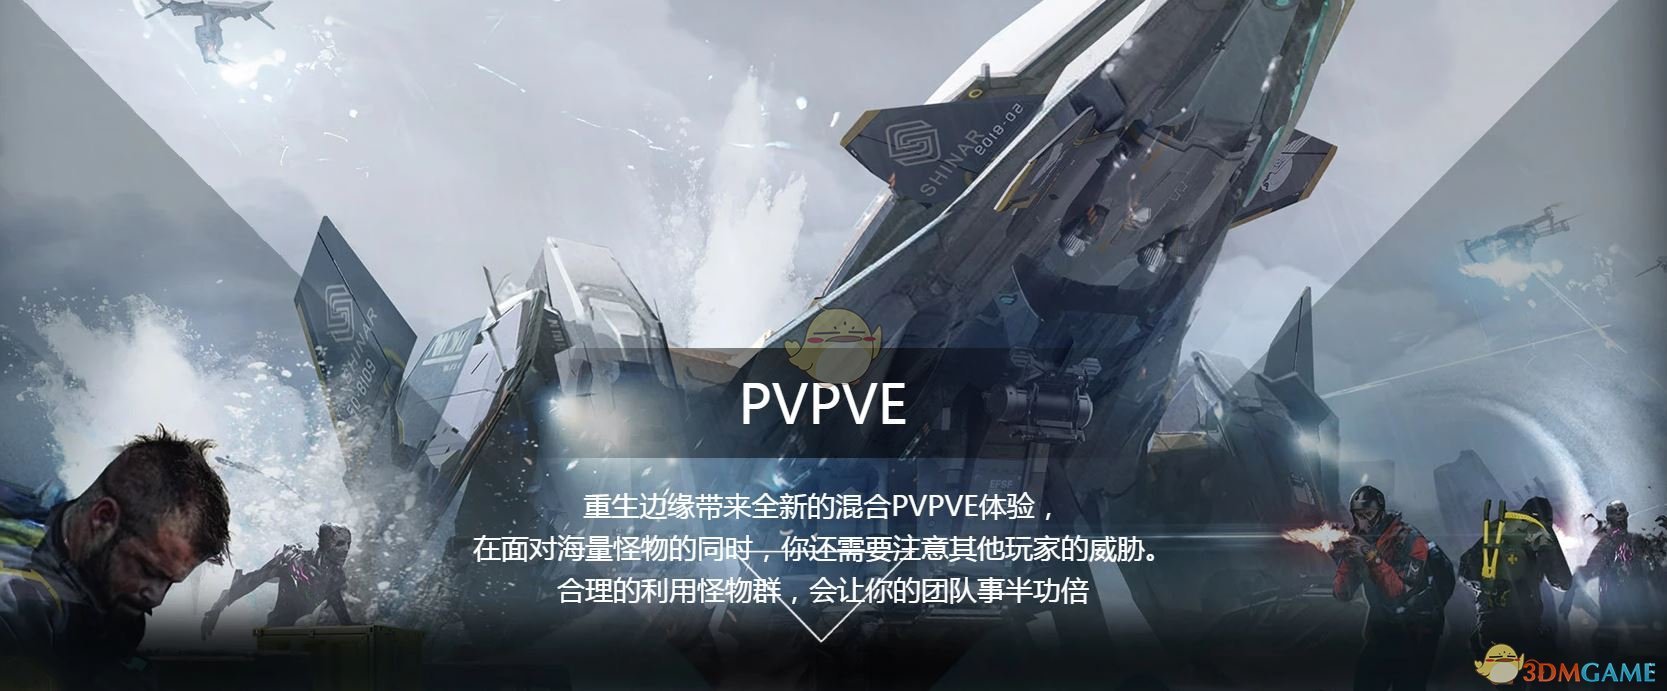 《重生边缘》PVPVE模式基本玩法介绍